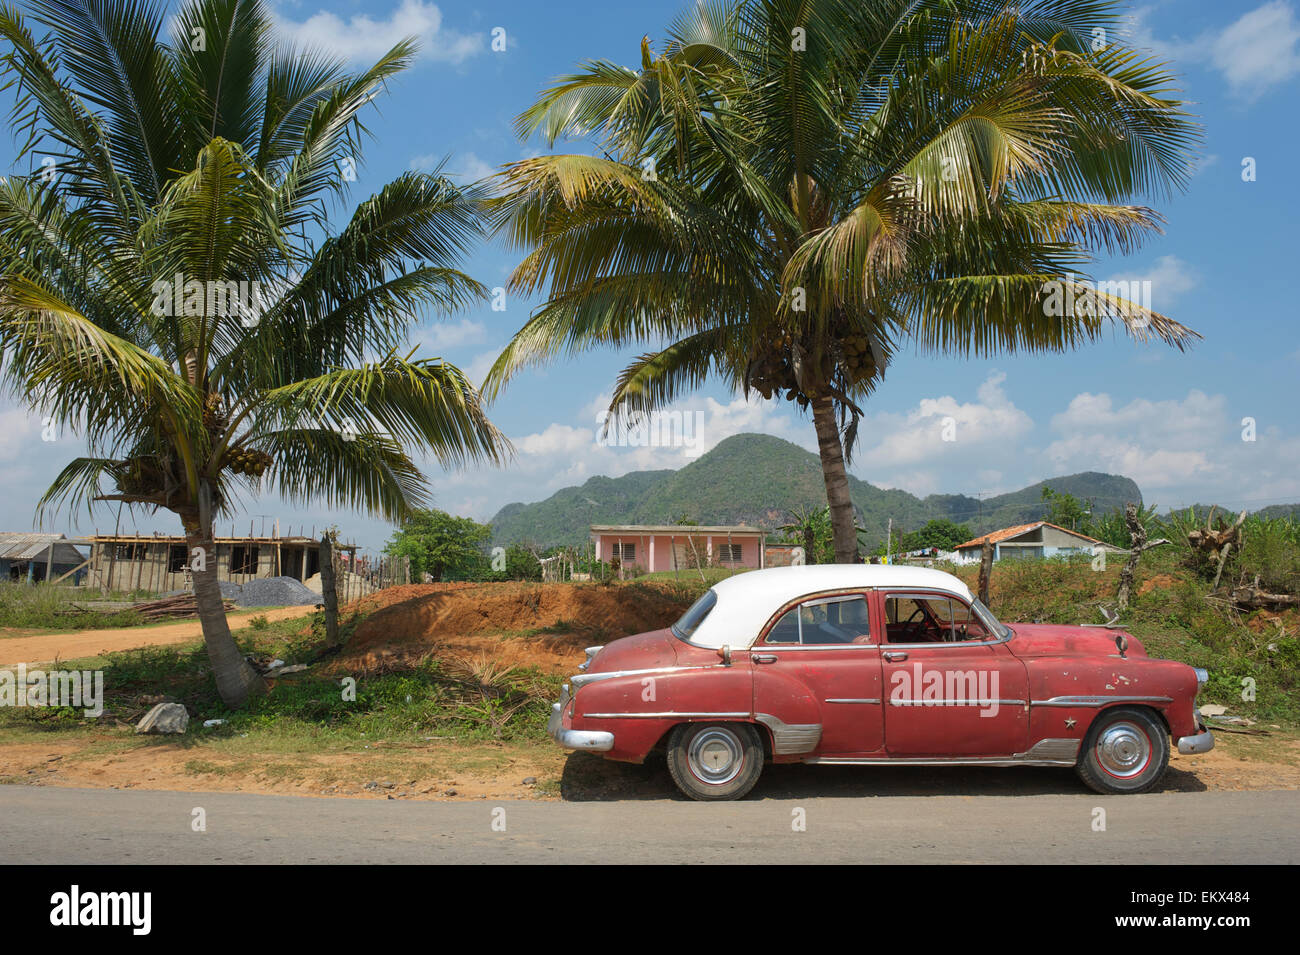 Amerikanische Oldtimer befindet sich in einer ruhigen Straße vor Palmen über einen Blick auf die nahen Berge stehen Stockfoto